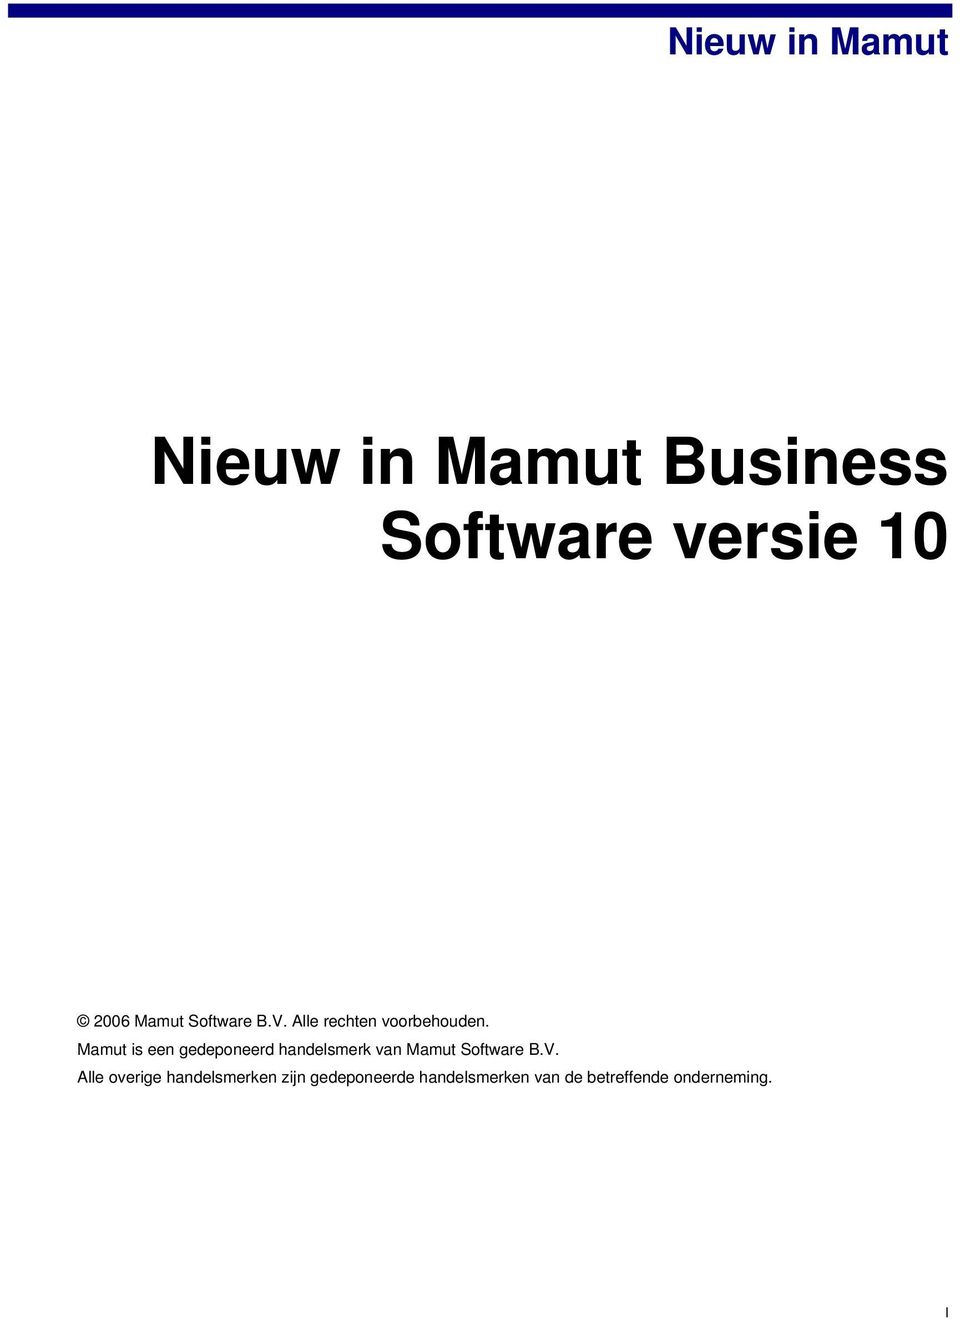 Mamut is een gedeponeerd handelsmerk van Mamut Software B.V.